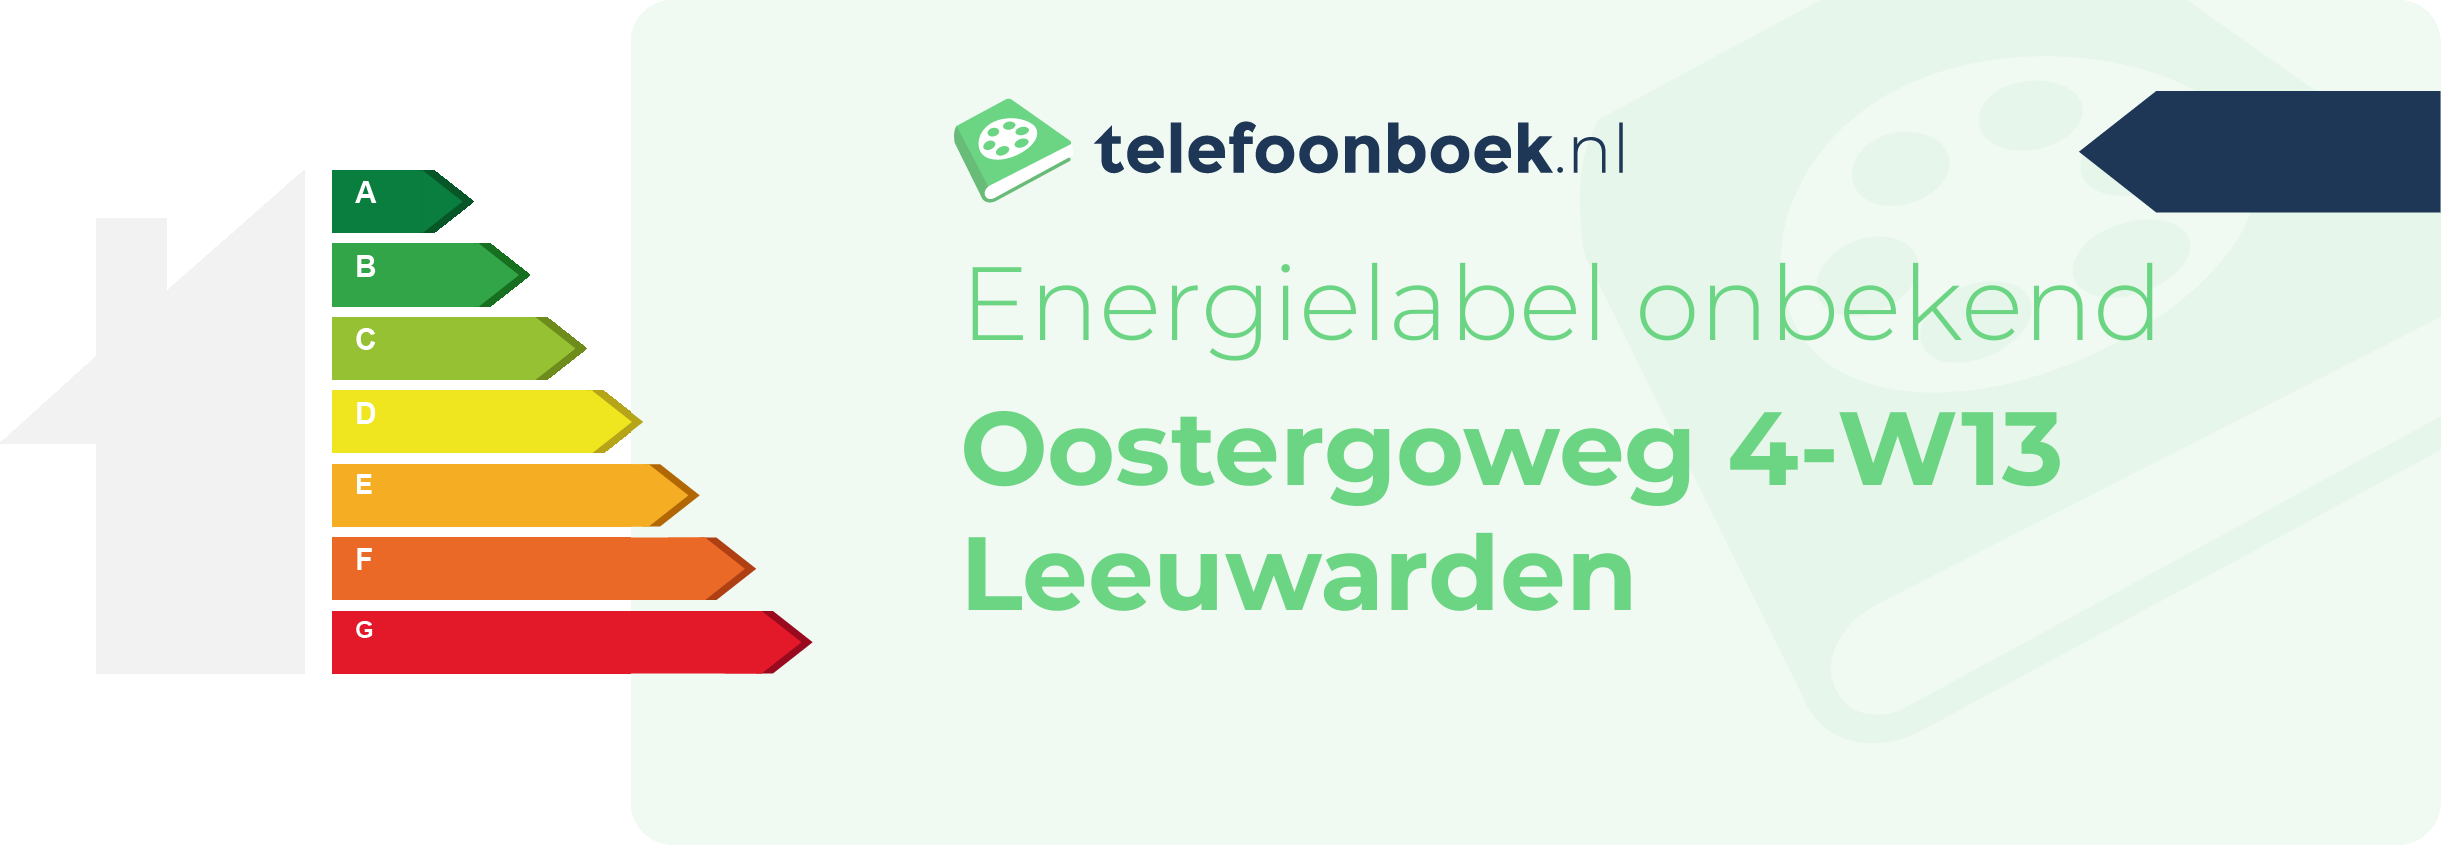 Energielabel Oostergoweg 4-W13 Leeuwarden